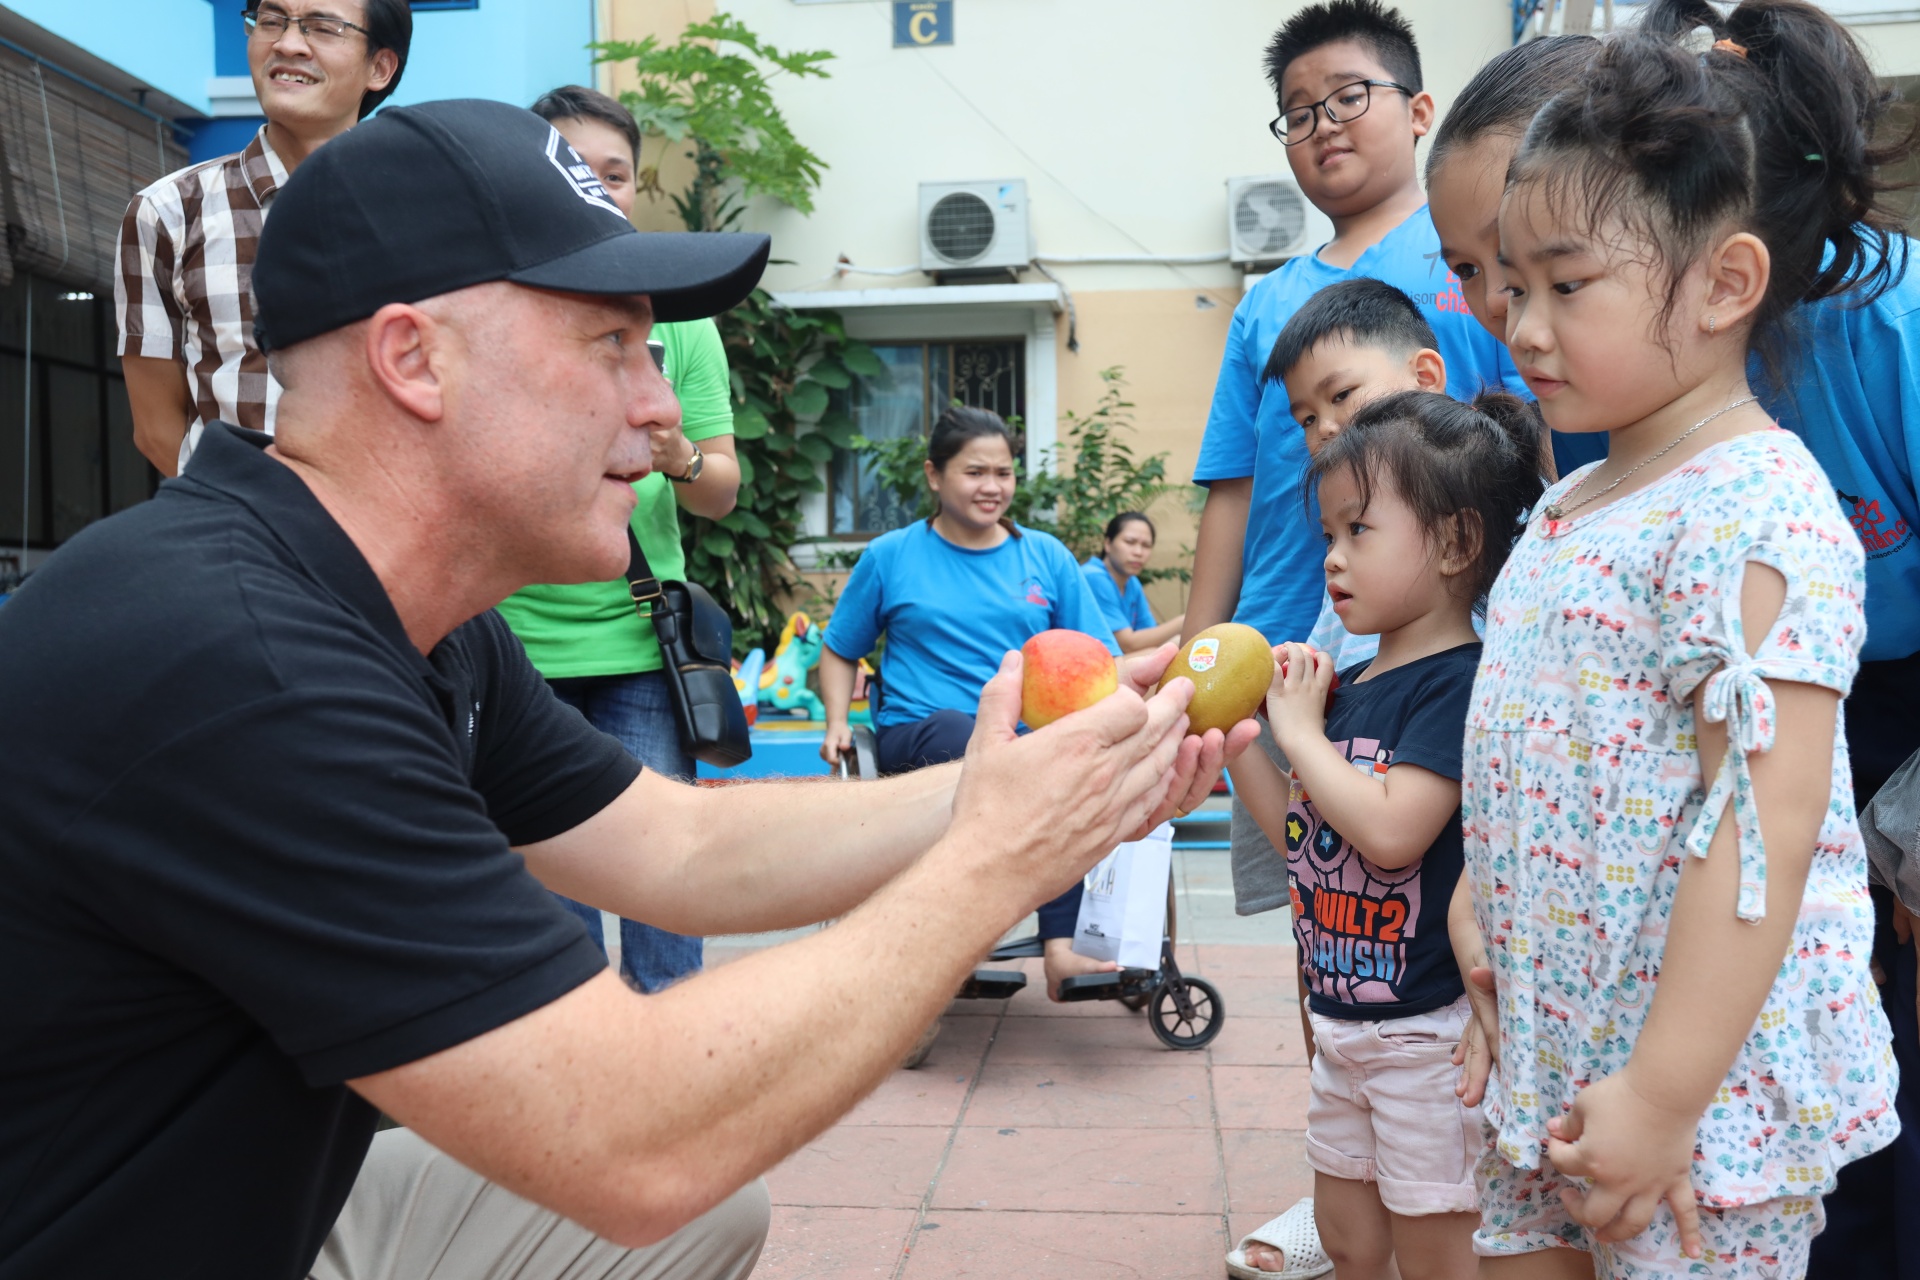 New Zealand fruit companies support vulnerable children in Vietnam